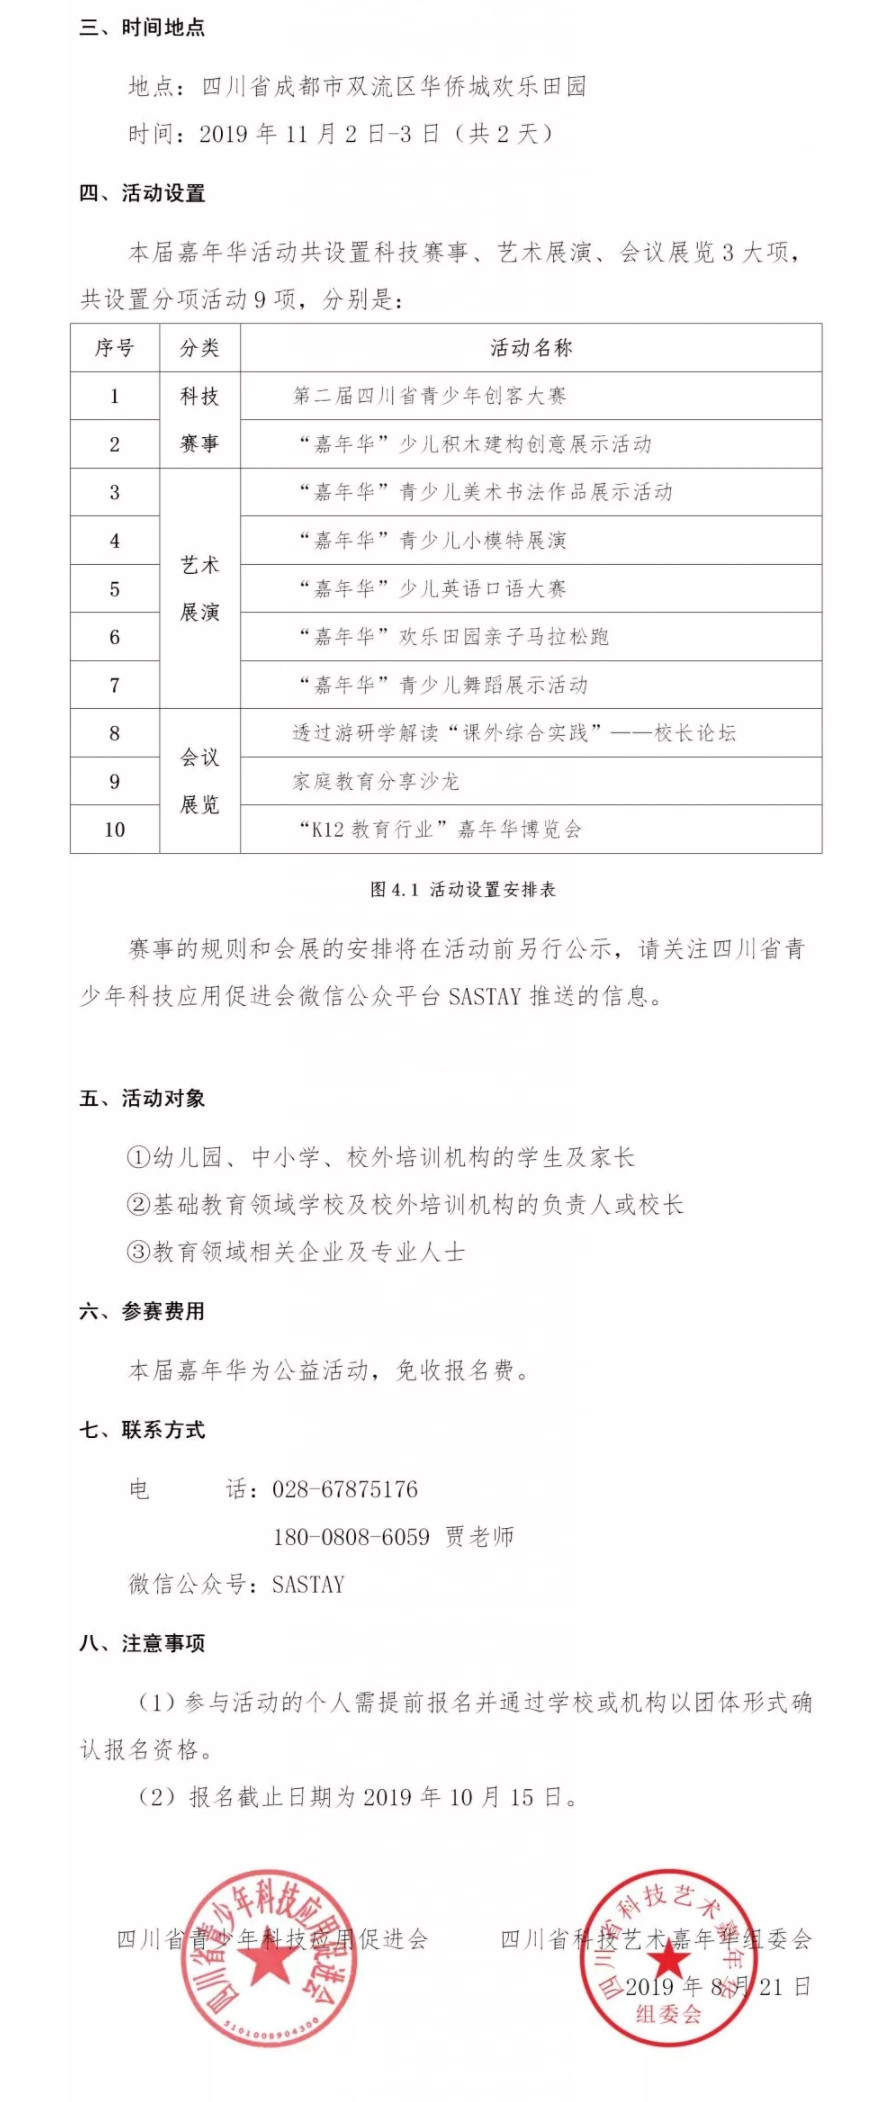 2019首届四川省科技艺术嘉年华竞赛活动公告2